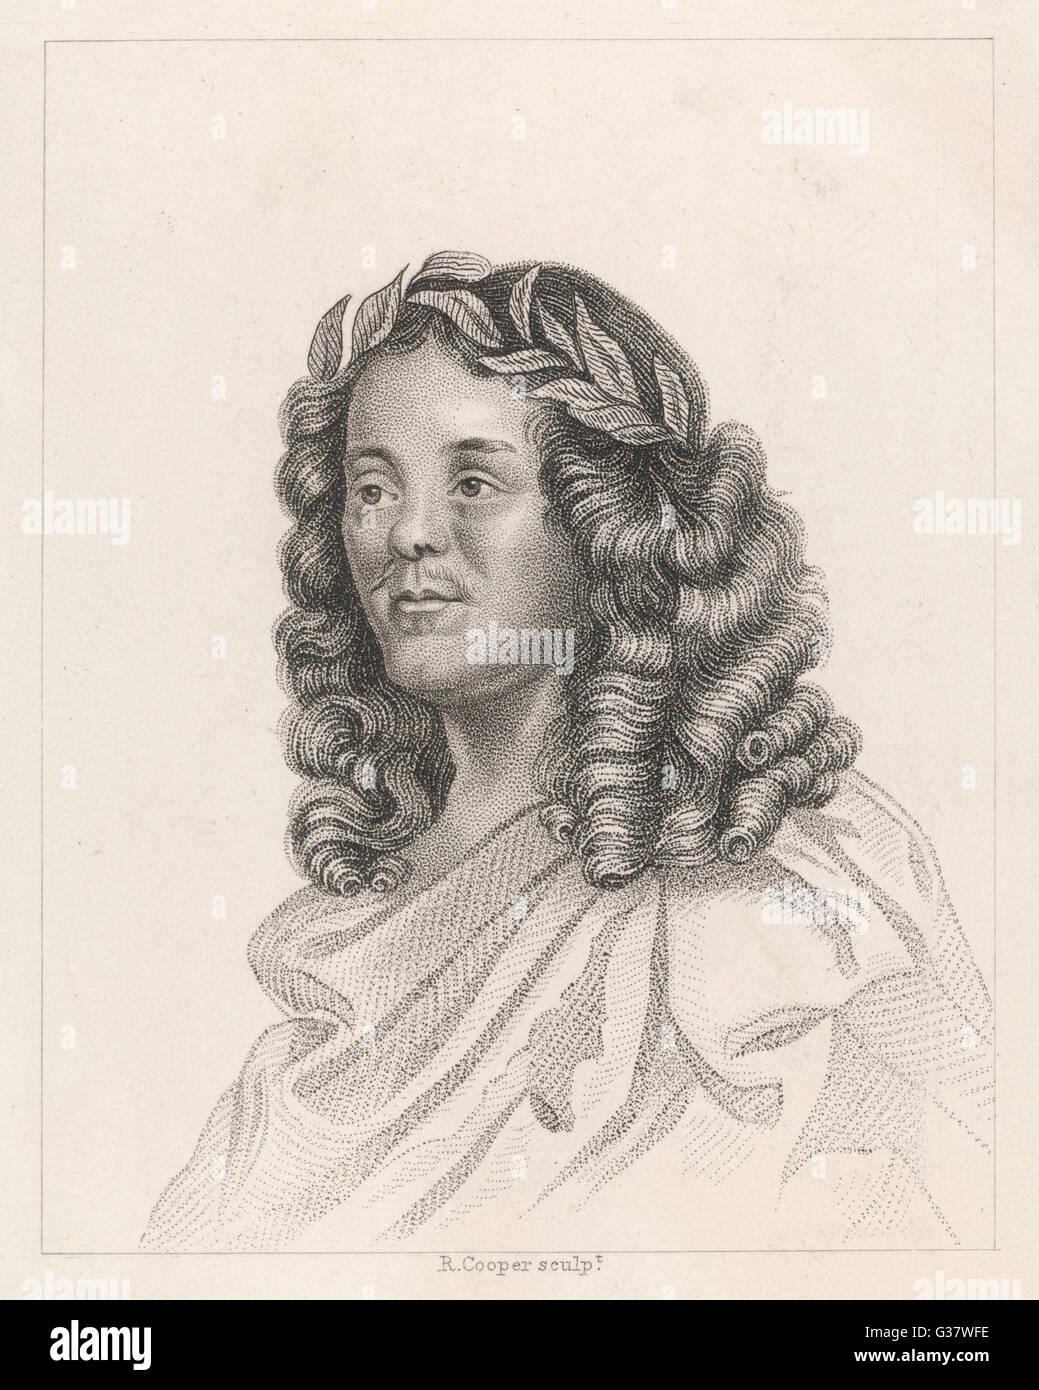 SIR WILLIAM DAVENANT englische Dichter und Dramatiker.  Dichter-Laureatus von 1638.       Datum: 1606-1668 Stockfoto